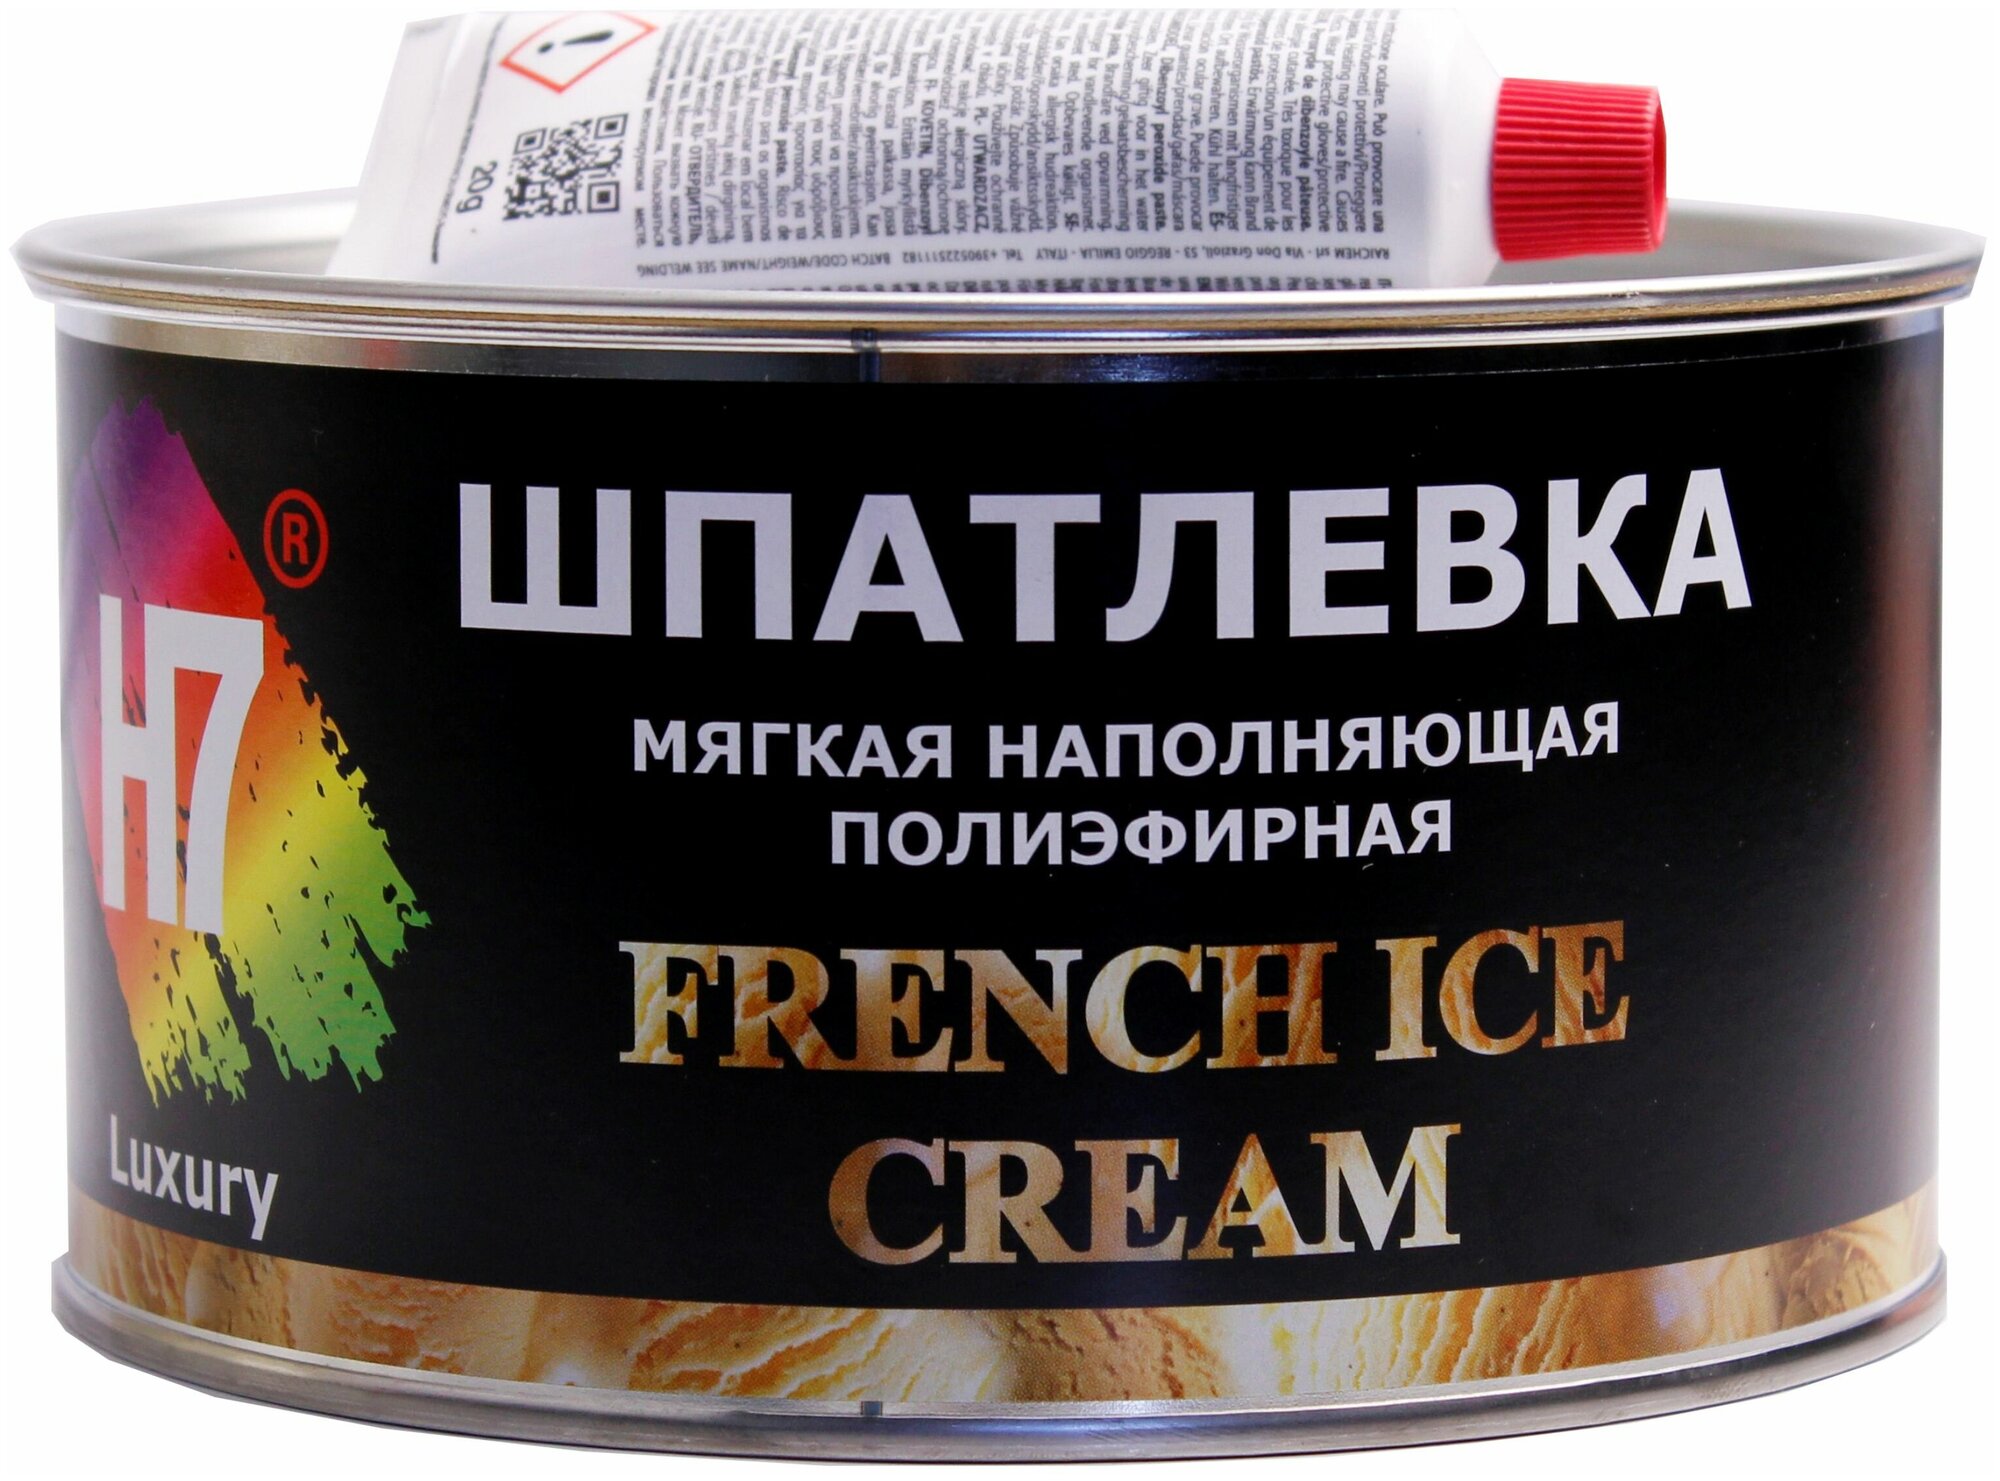 Шпатлевка мягкая наполняющая полиэфирная French Ice Cream (10л=1860гр) H7 771782